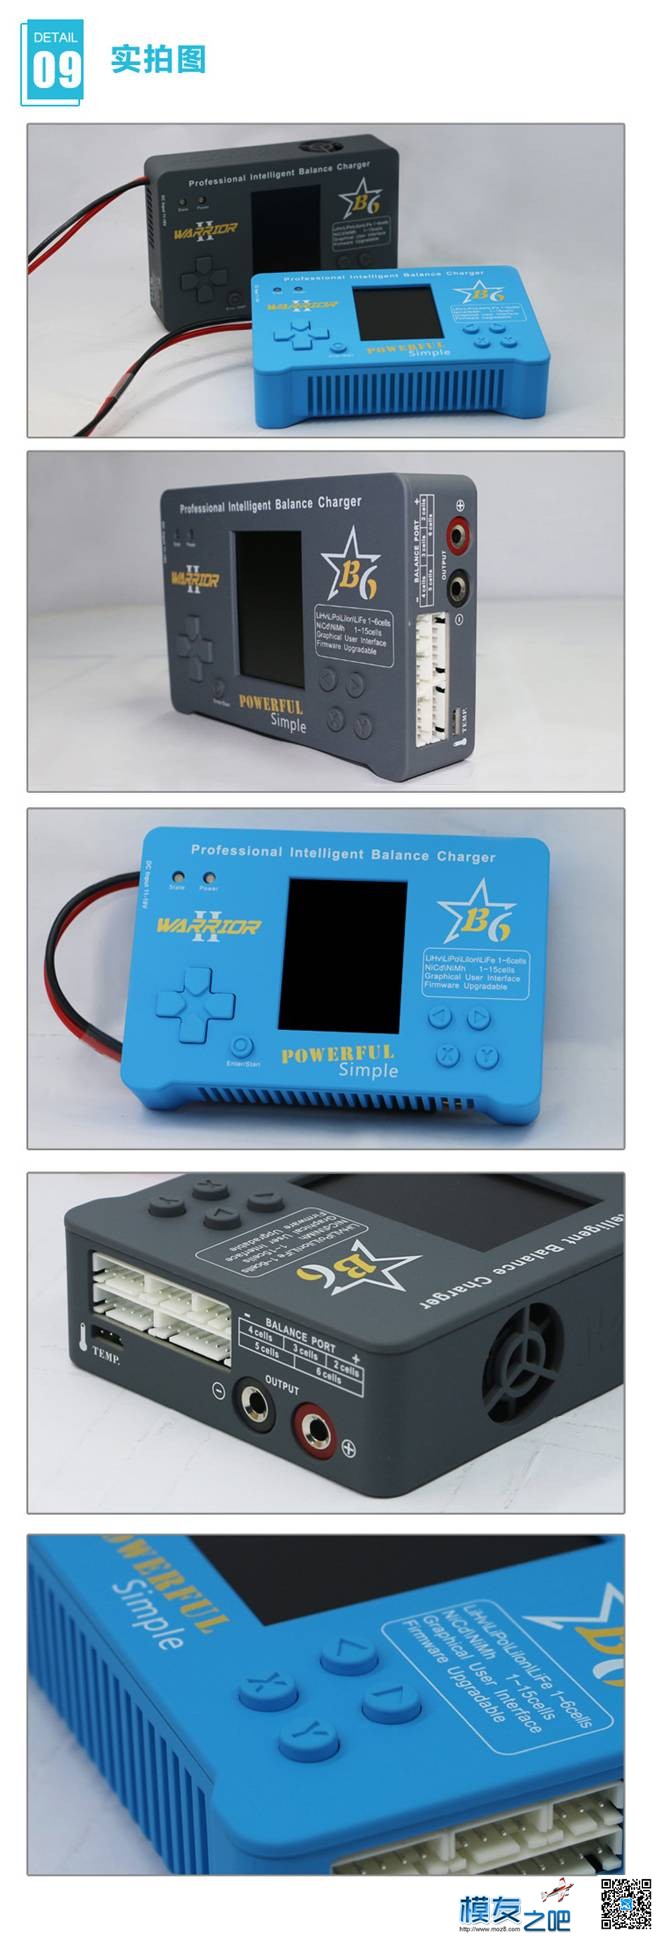 【模友之吧】新款B6 gamebox智能平衡充电器测试团购活动 电池,充电器,免费,平衡充,模友之吧 作者:飞天狼 970 